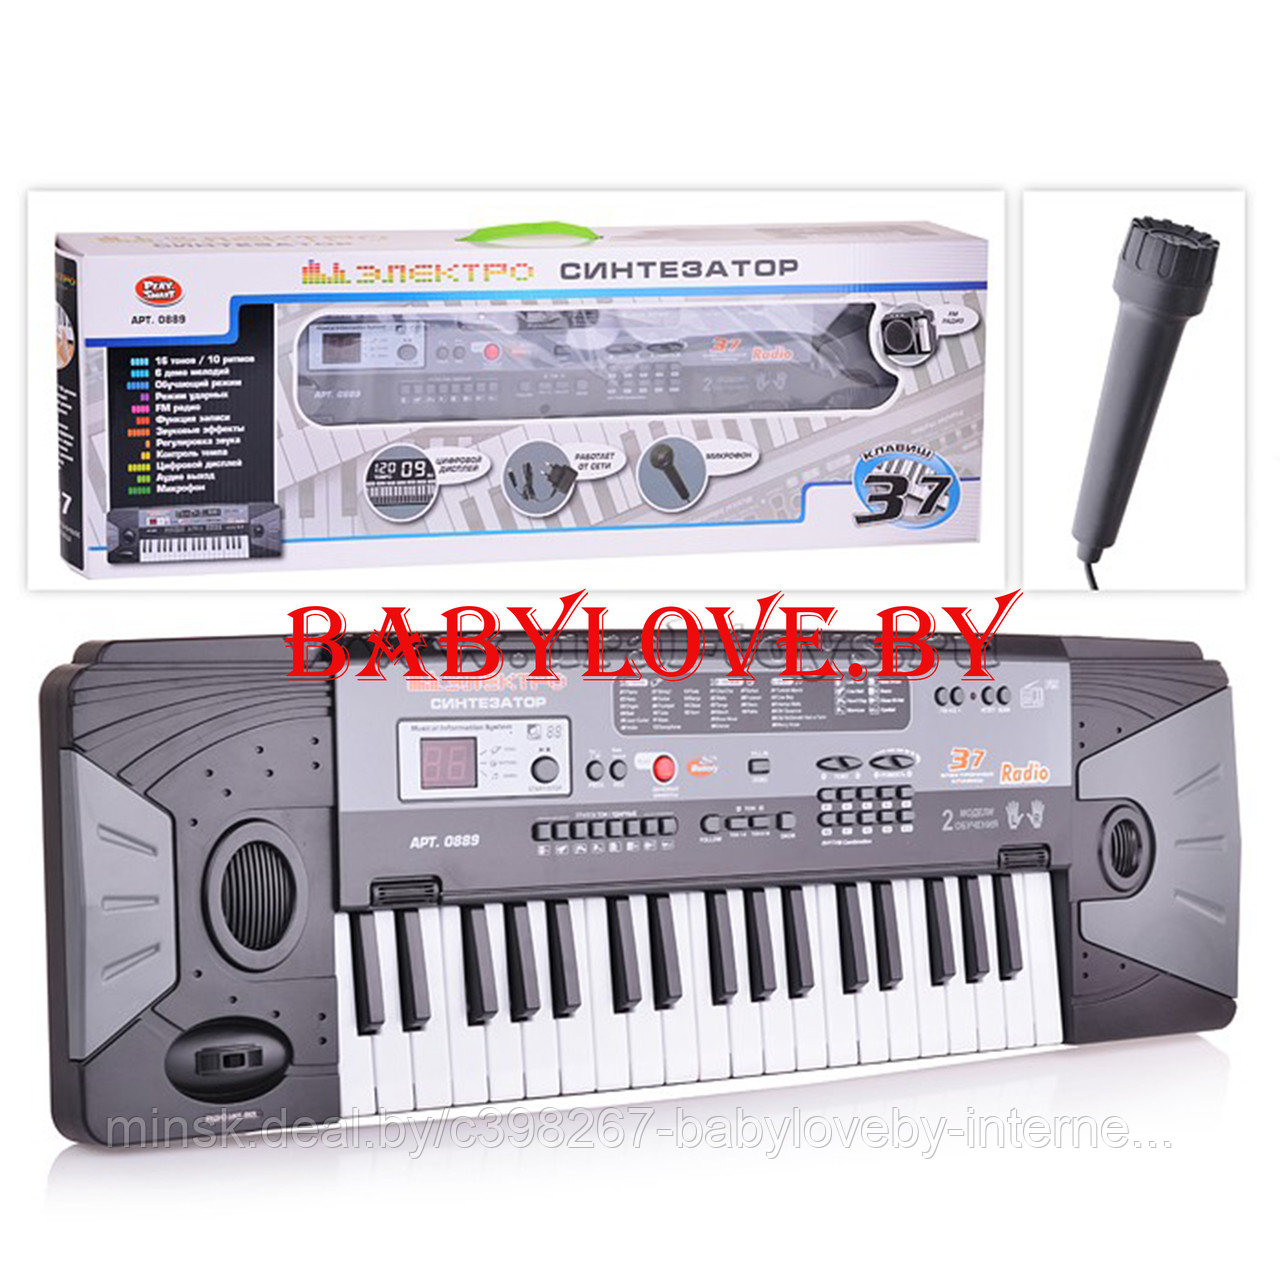 Синтезатор пианино MQ-007FM/Play smart 0889 на батарейках, в коробке